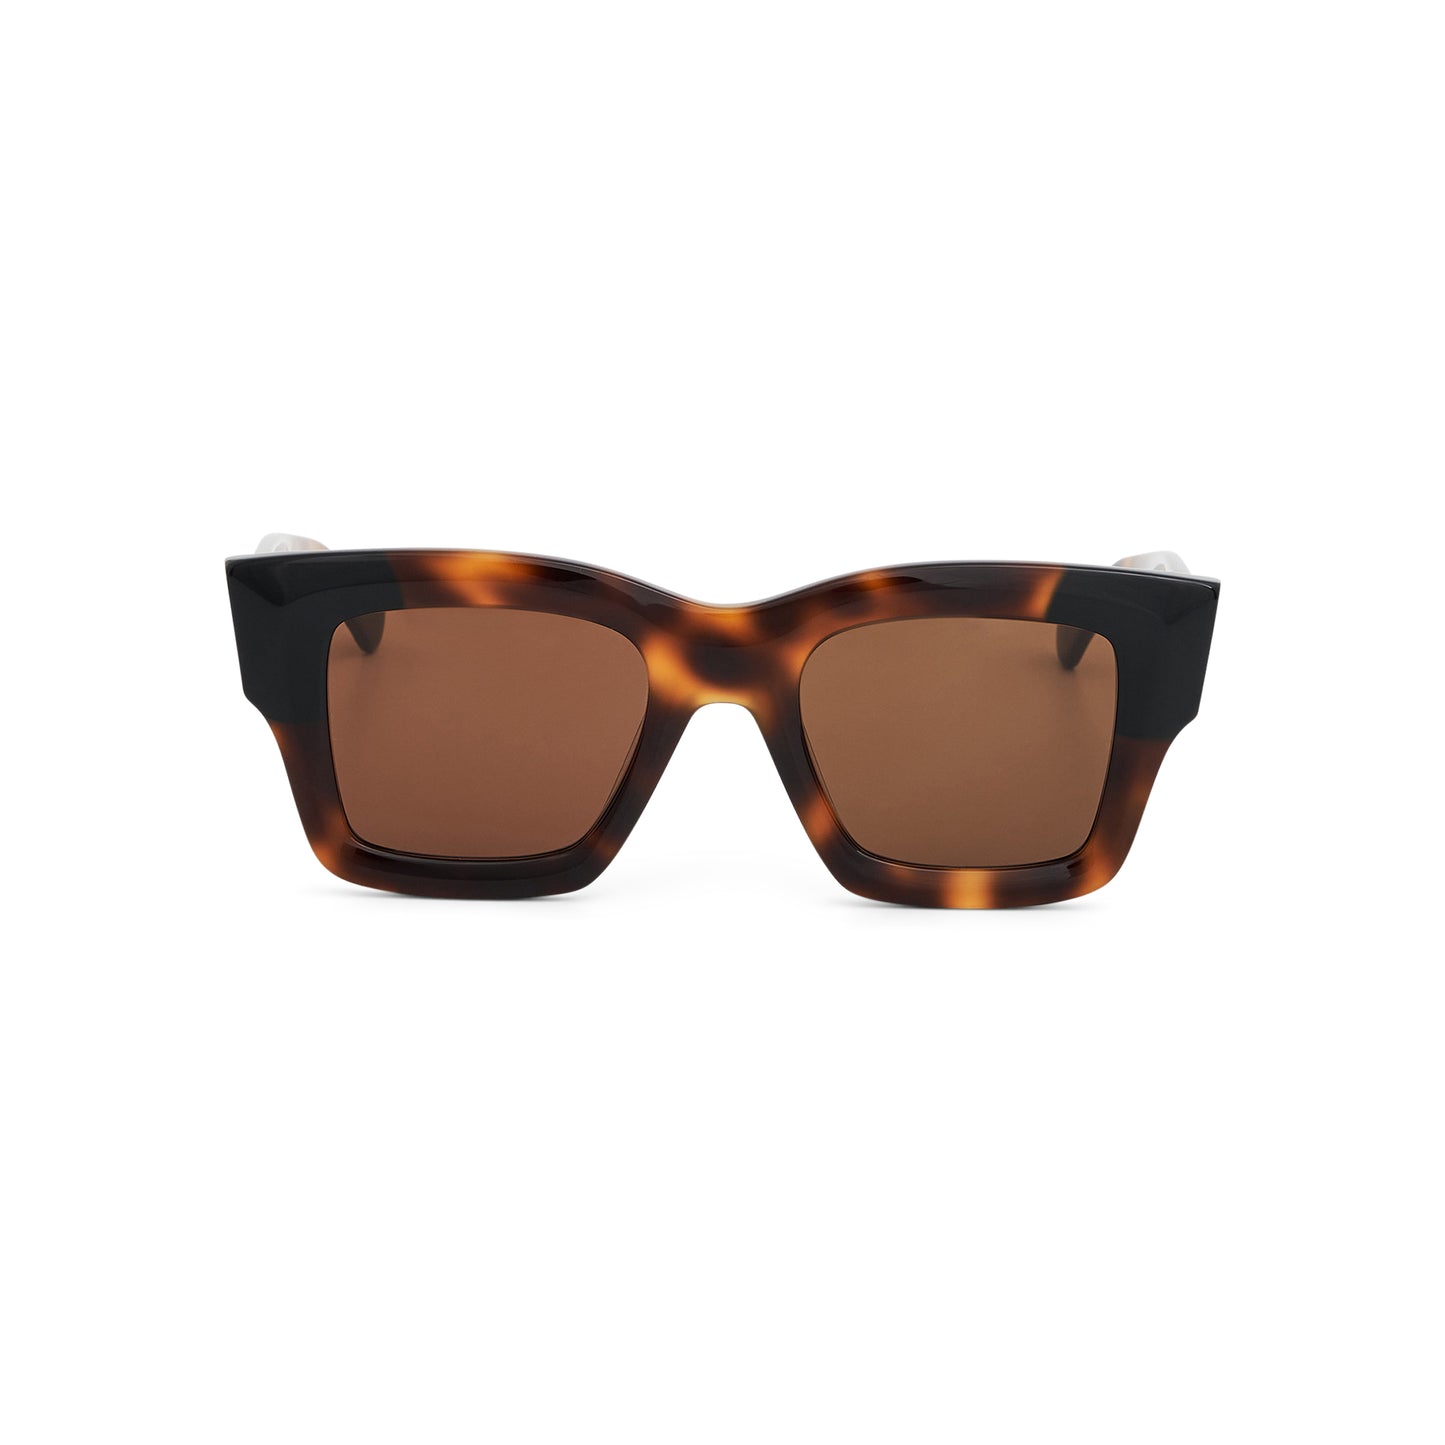 Baci Sunglasses in Multi-Brown